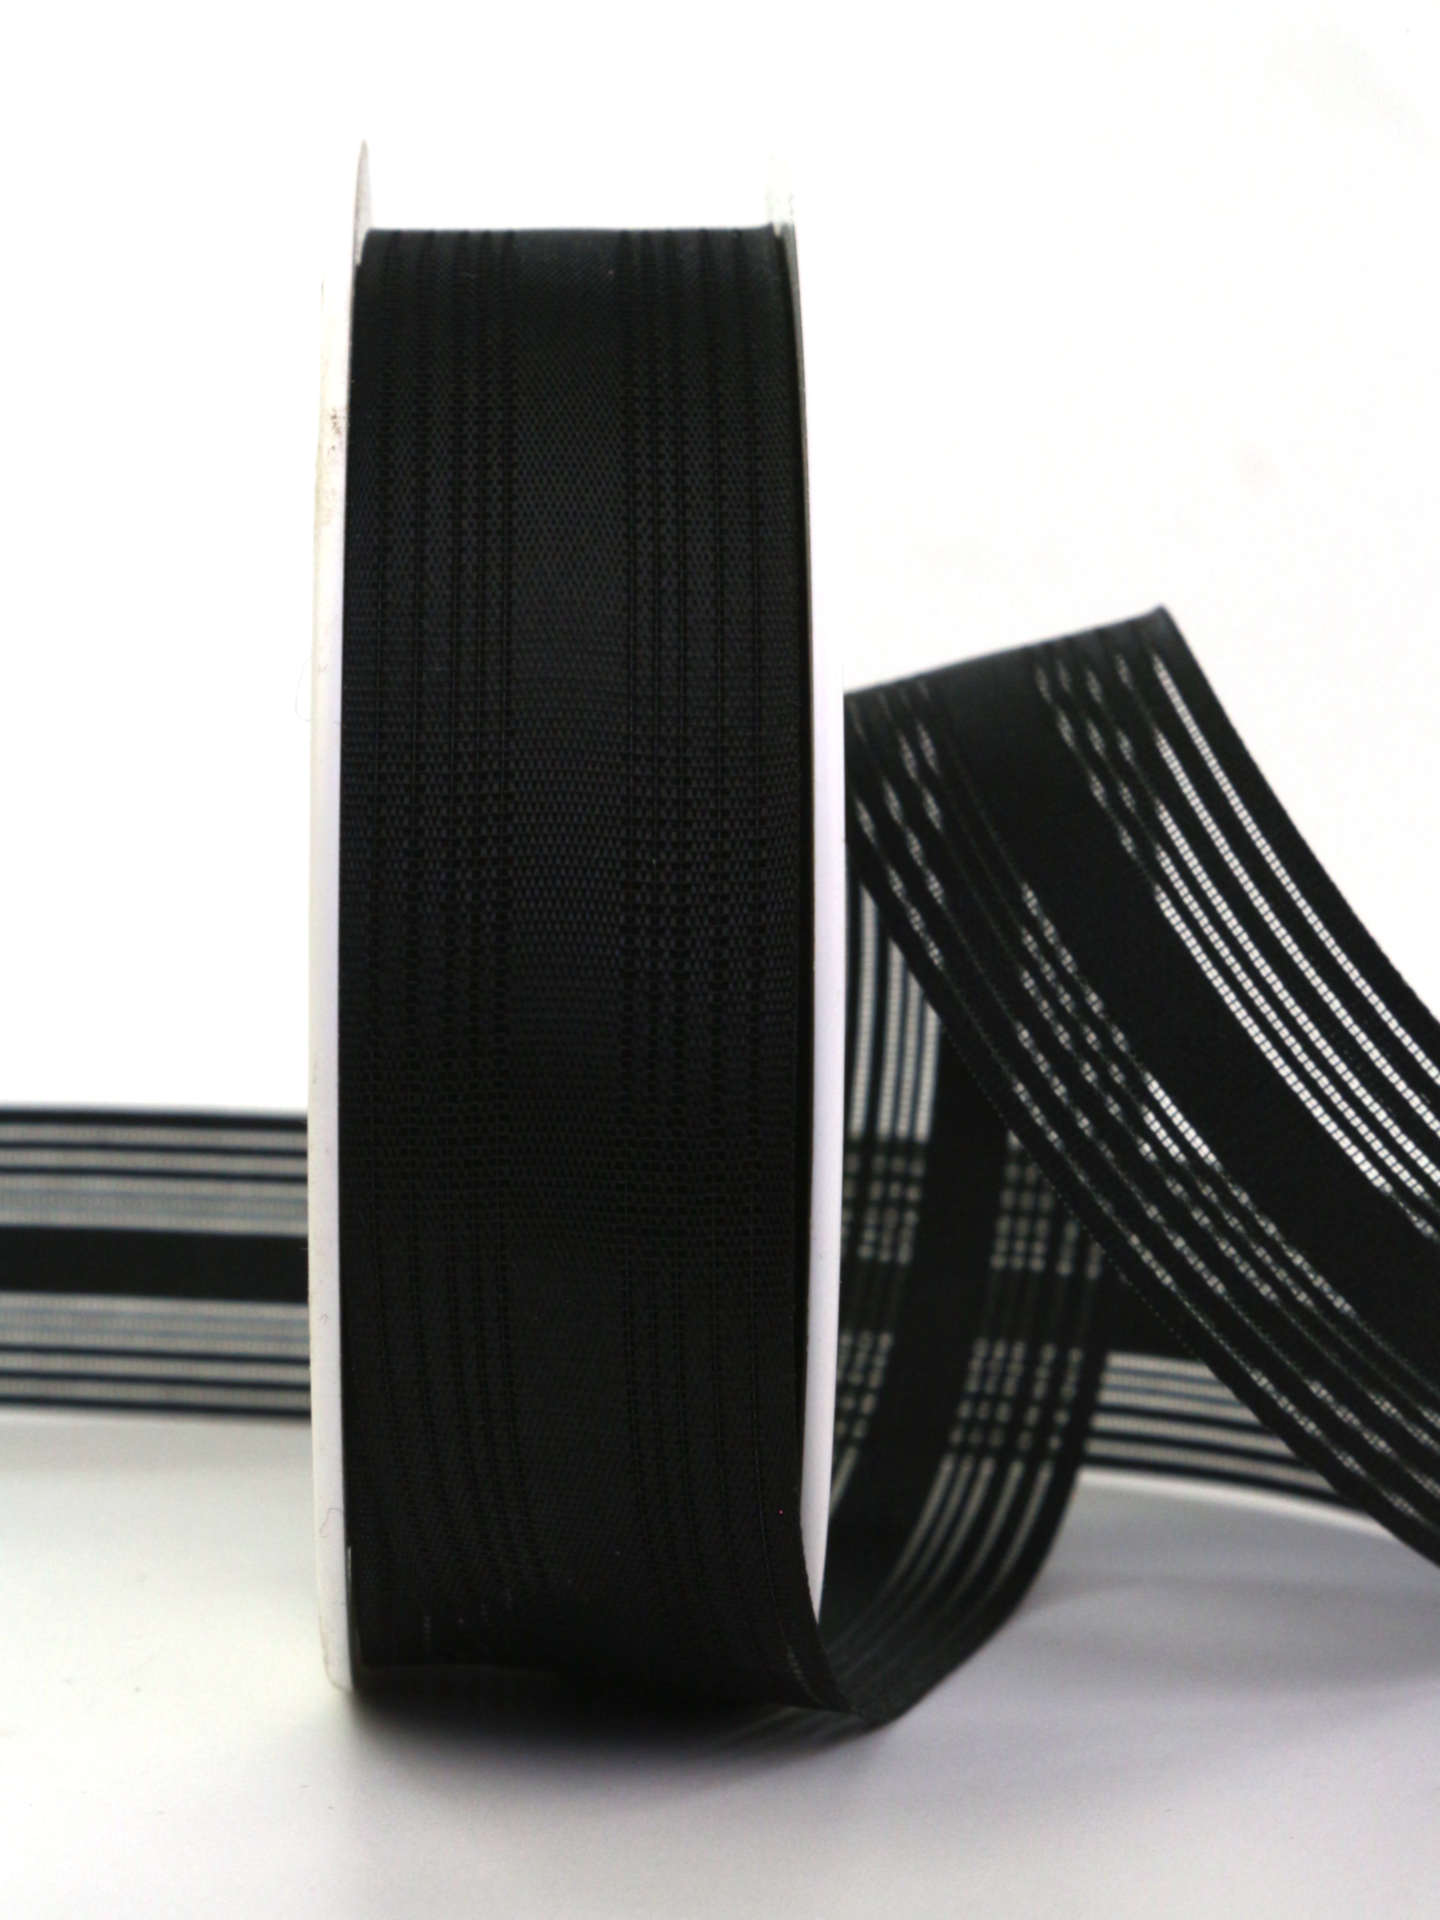 Gestreifter Trauerflor, schwarz, 25 mm breit, 25 m Rolle - trauerband, trauerflor